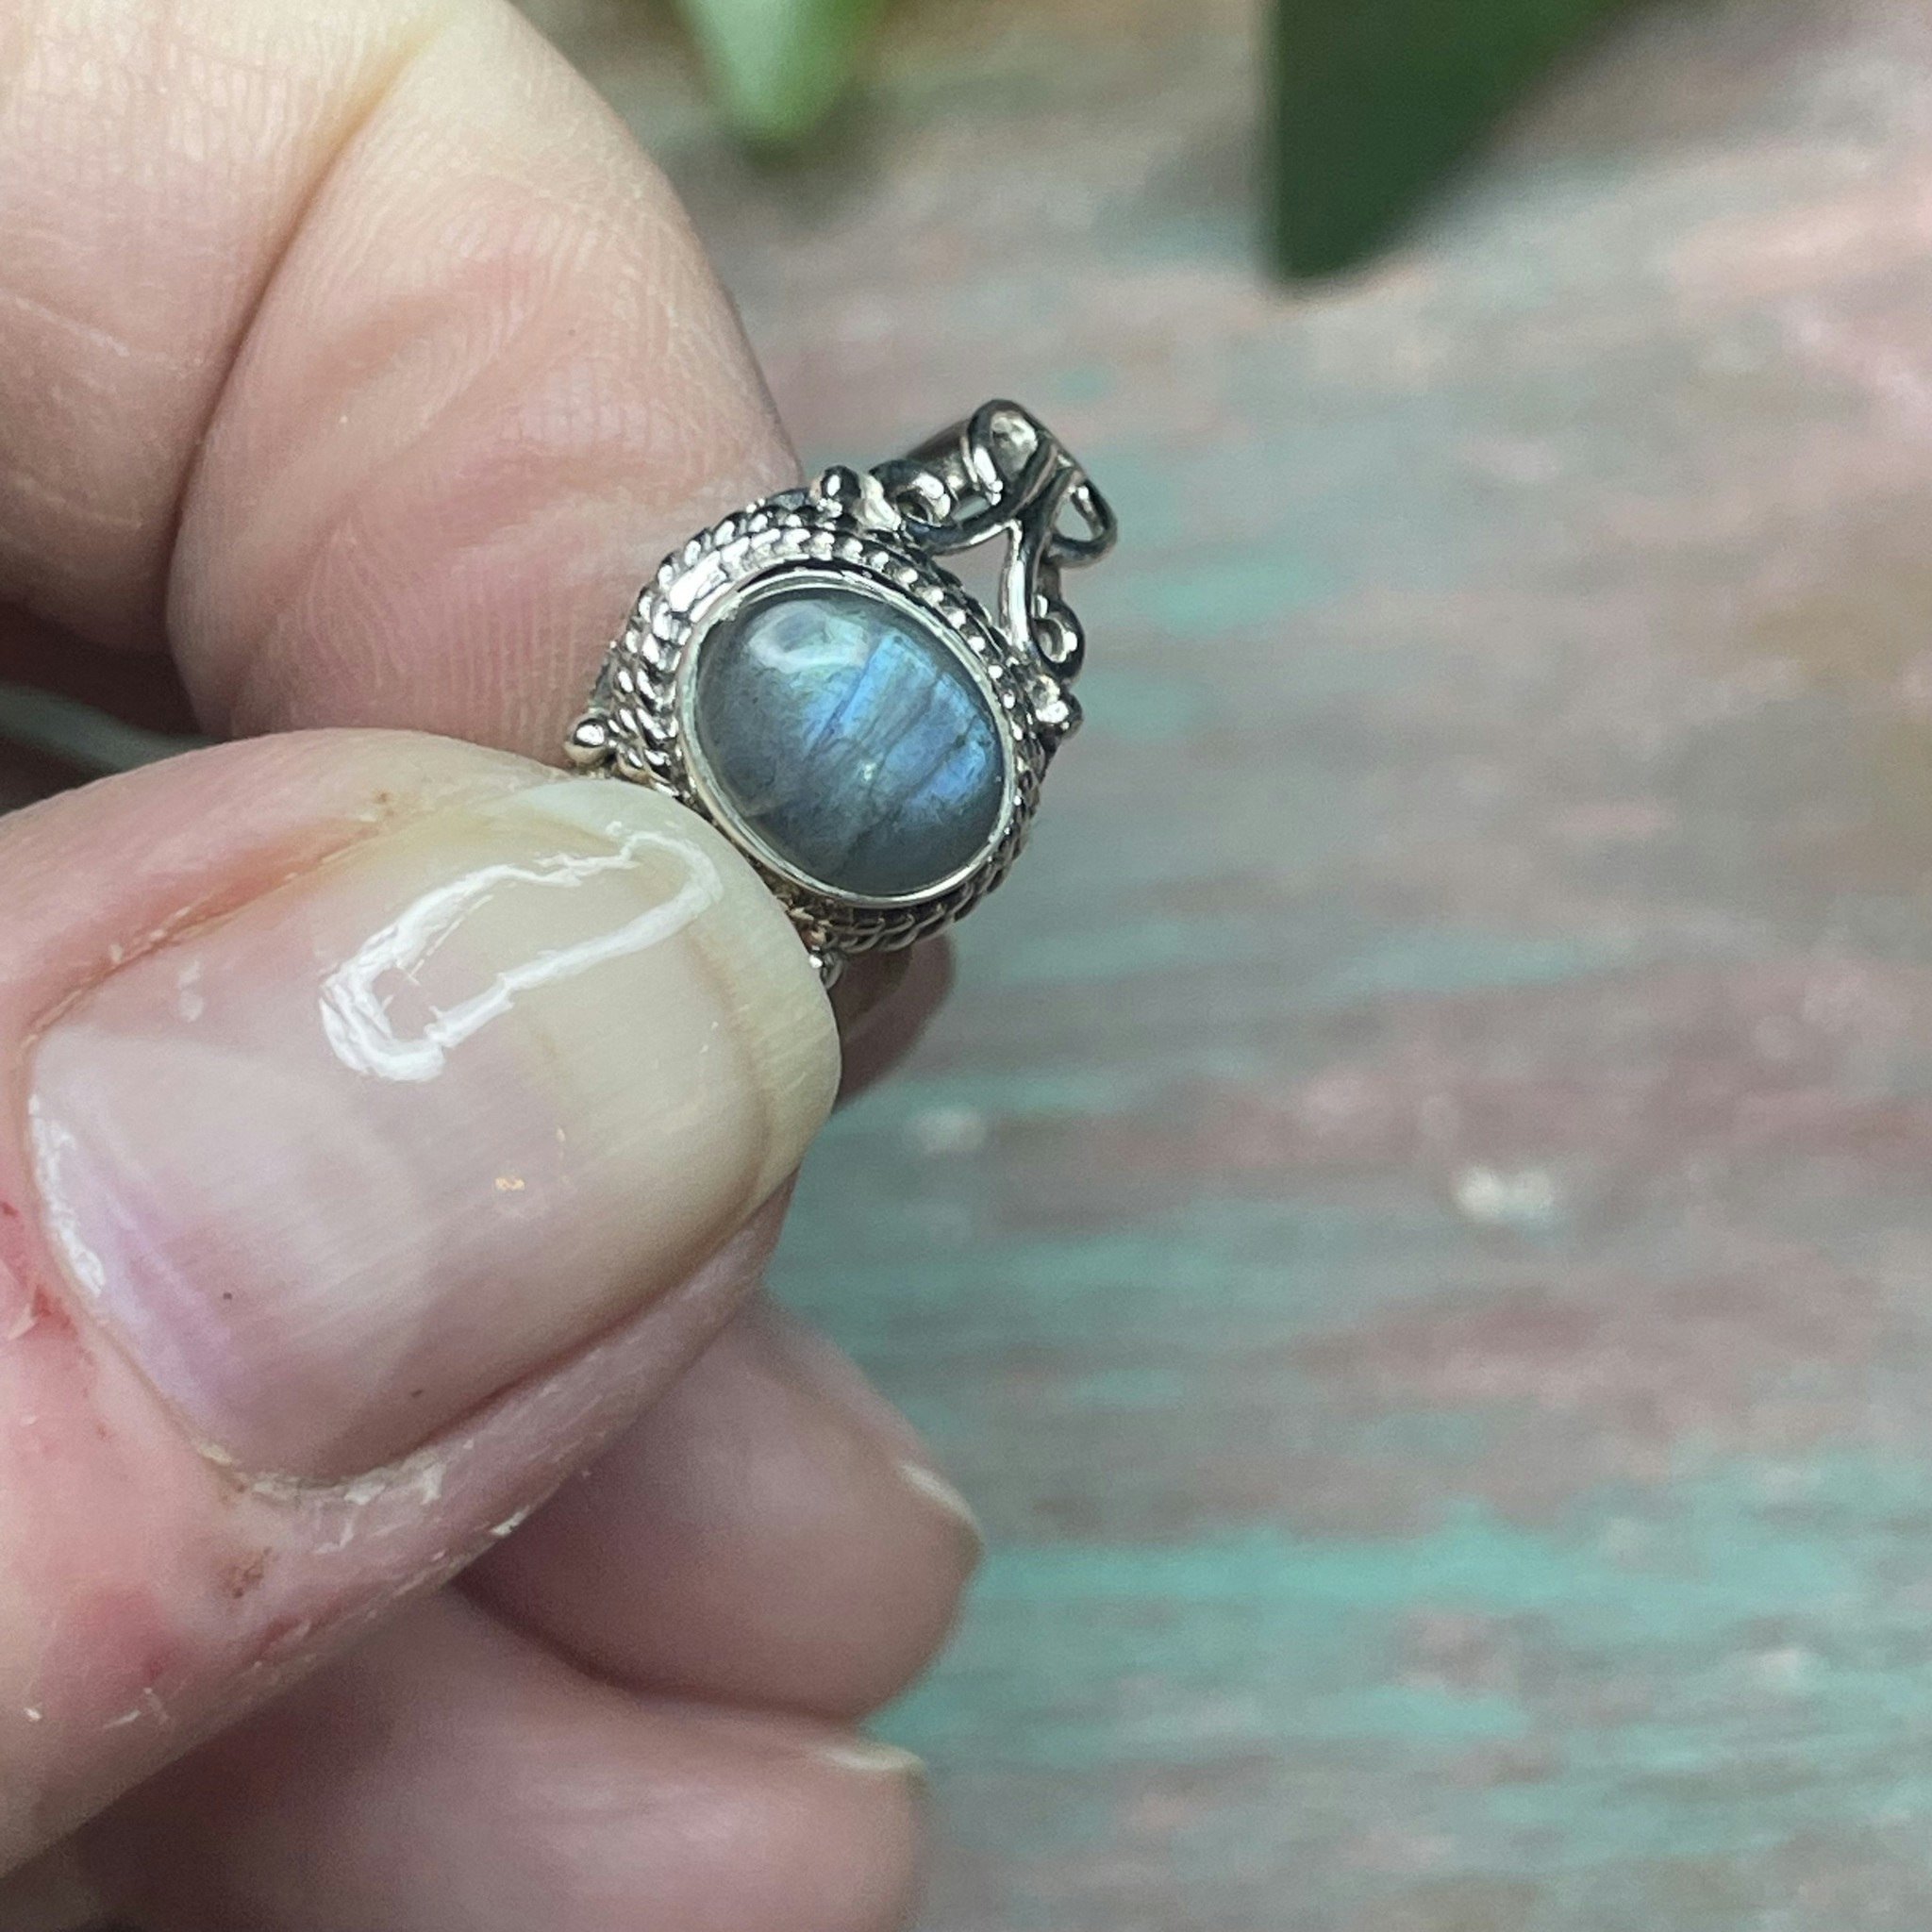 Labradorit ring silver 925